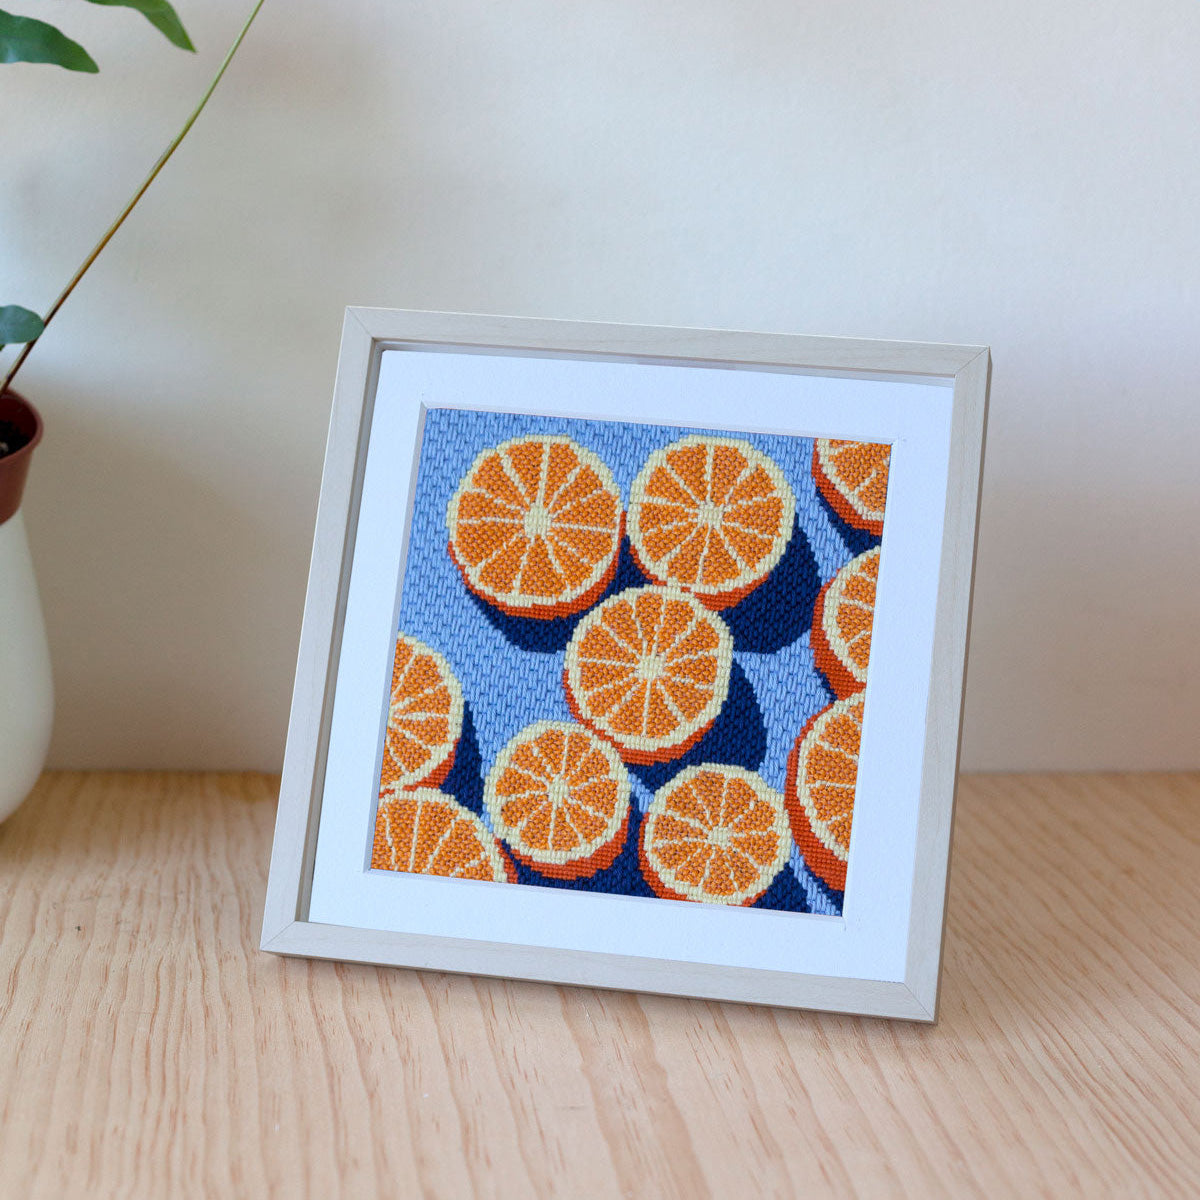 Needlepoint Kit - Agrumes (Oranges)